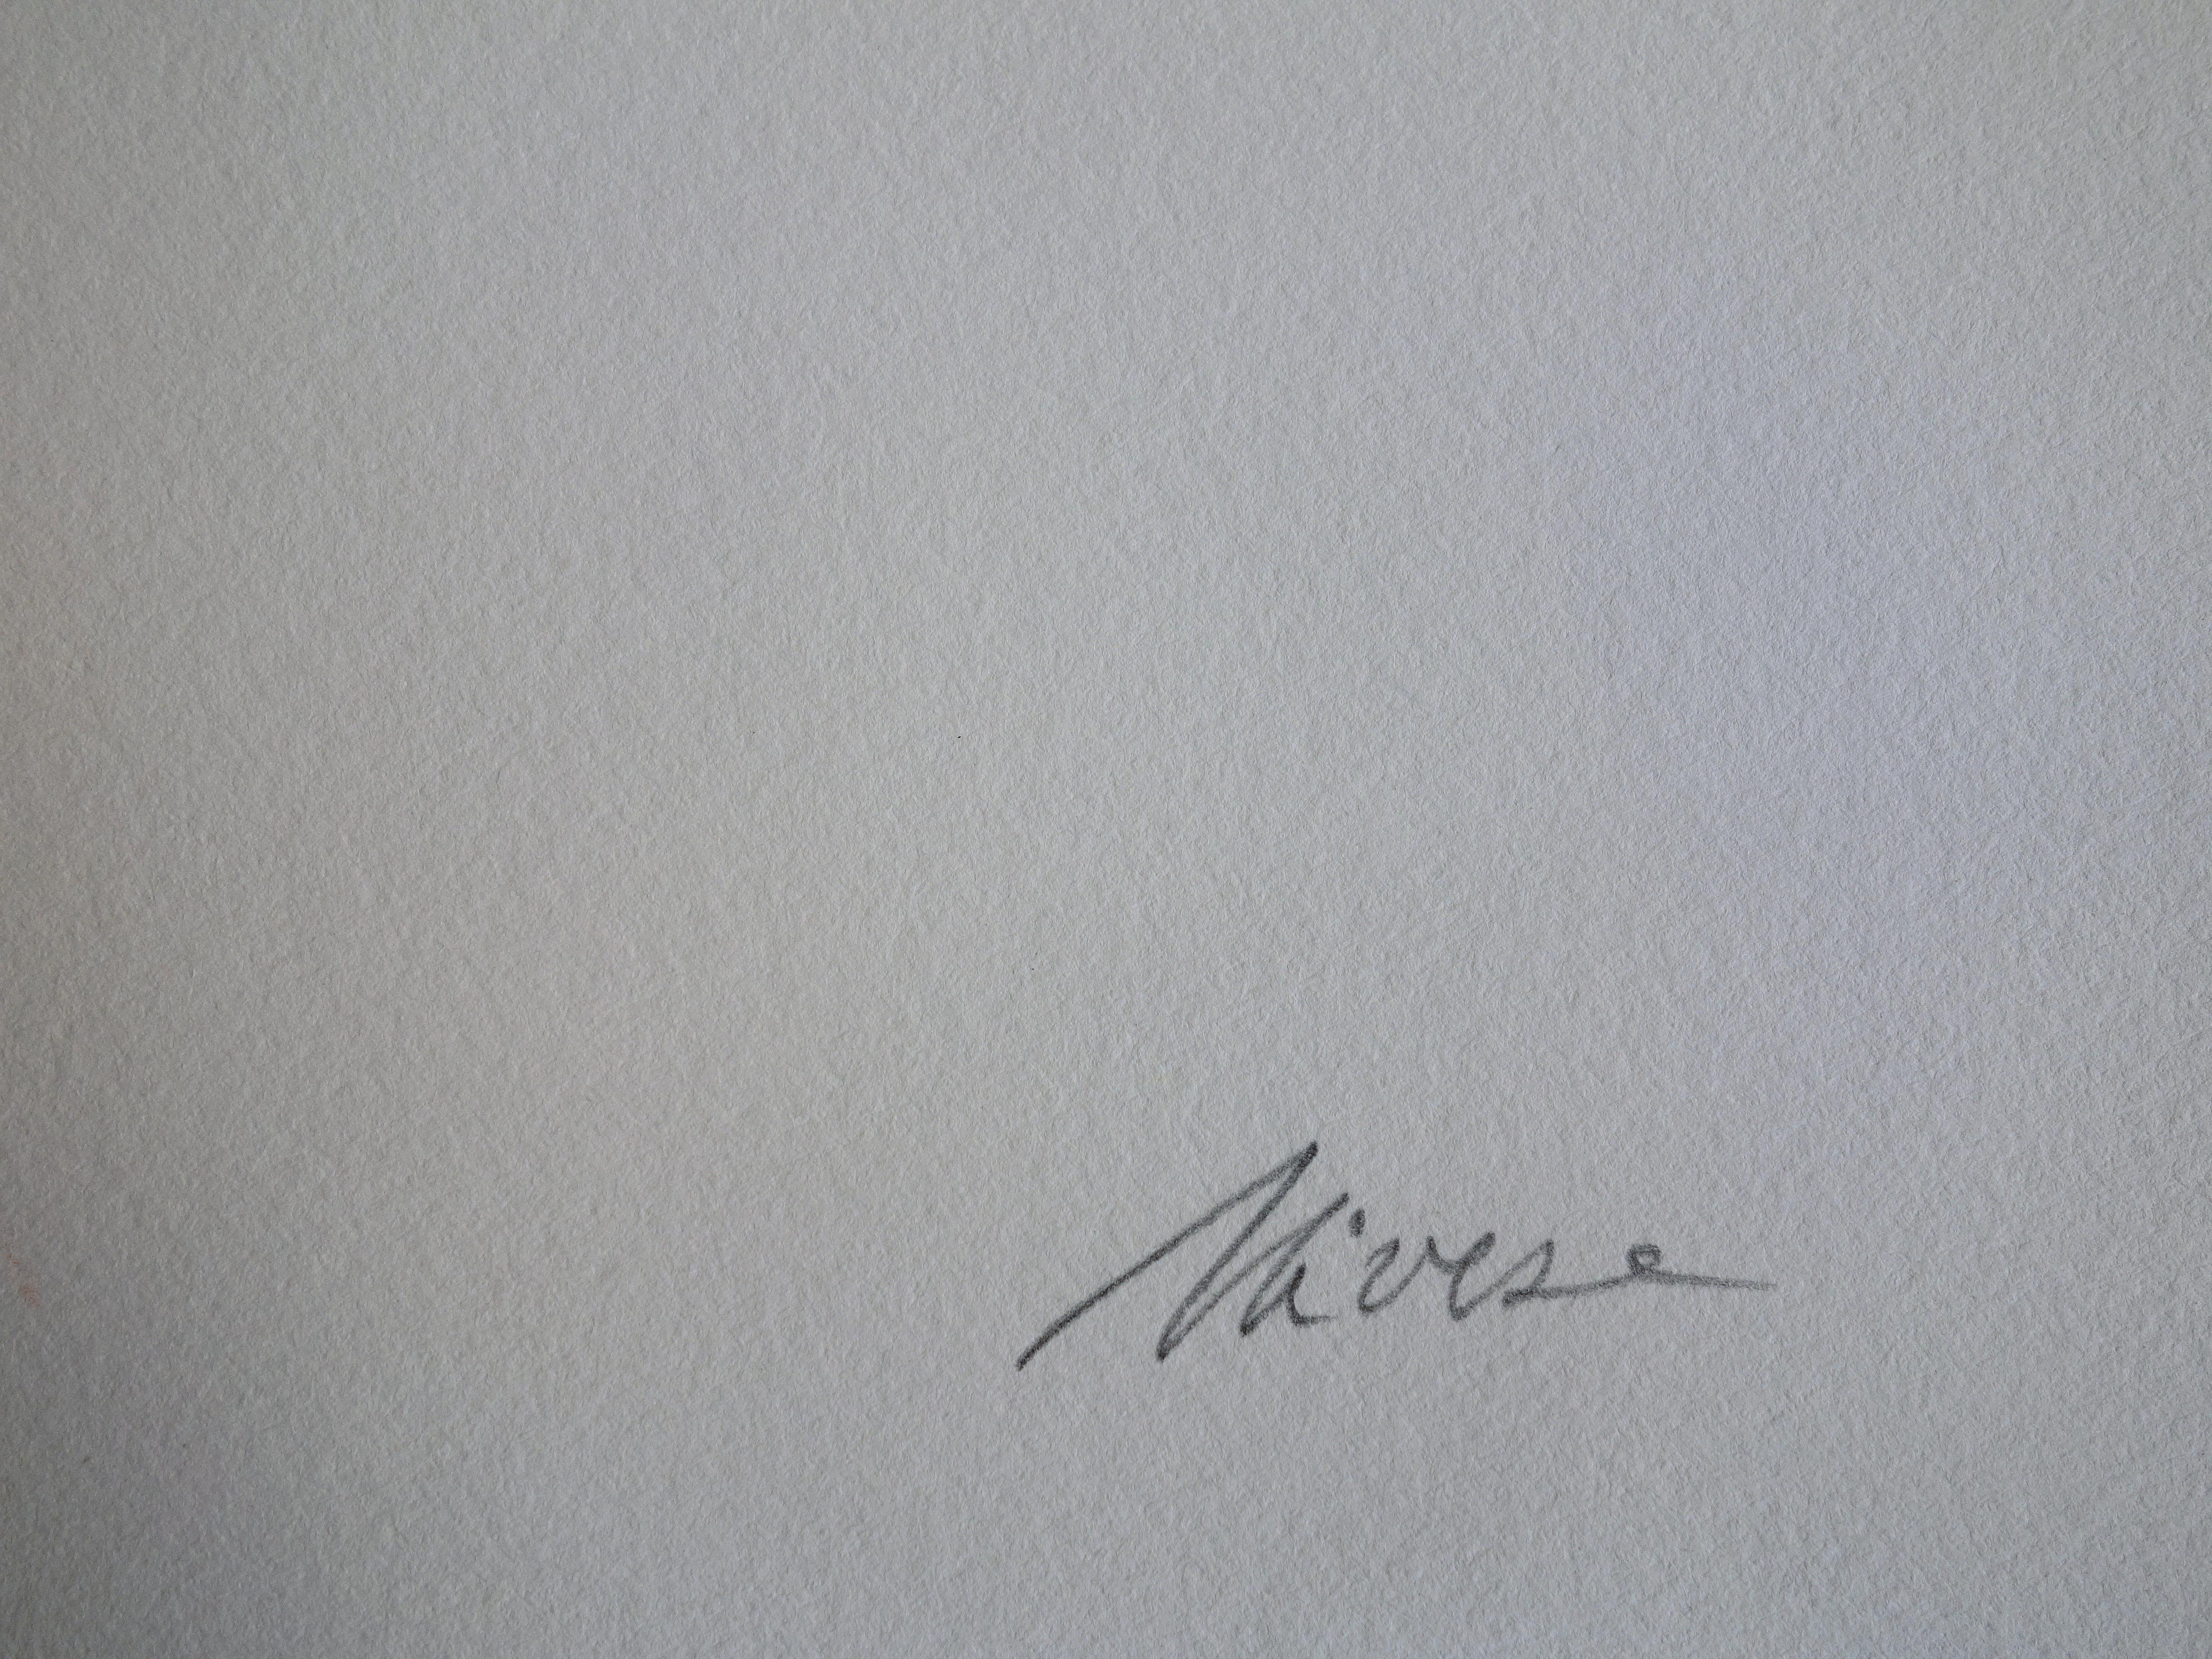 Oscari NIVESE
Farbiges geometrisches Muster

Original-Siebdruck
Handsigniert mit Bleistift
Nummeriert / 60 Ex
Auf Pergament 38 x 56 cm (ca. 15 x 22 Zoll)

Ausgezeichneter Zustand